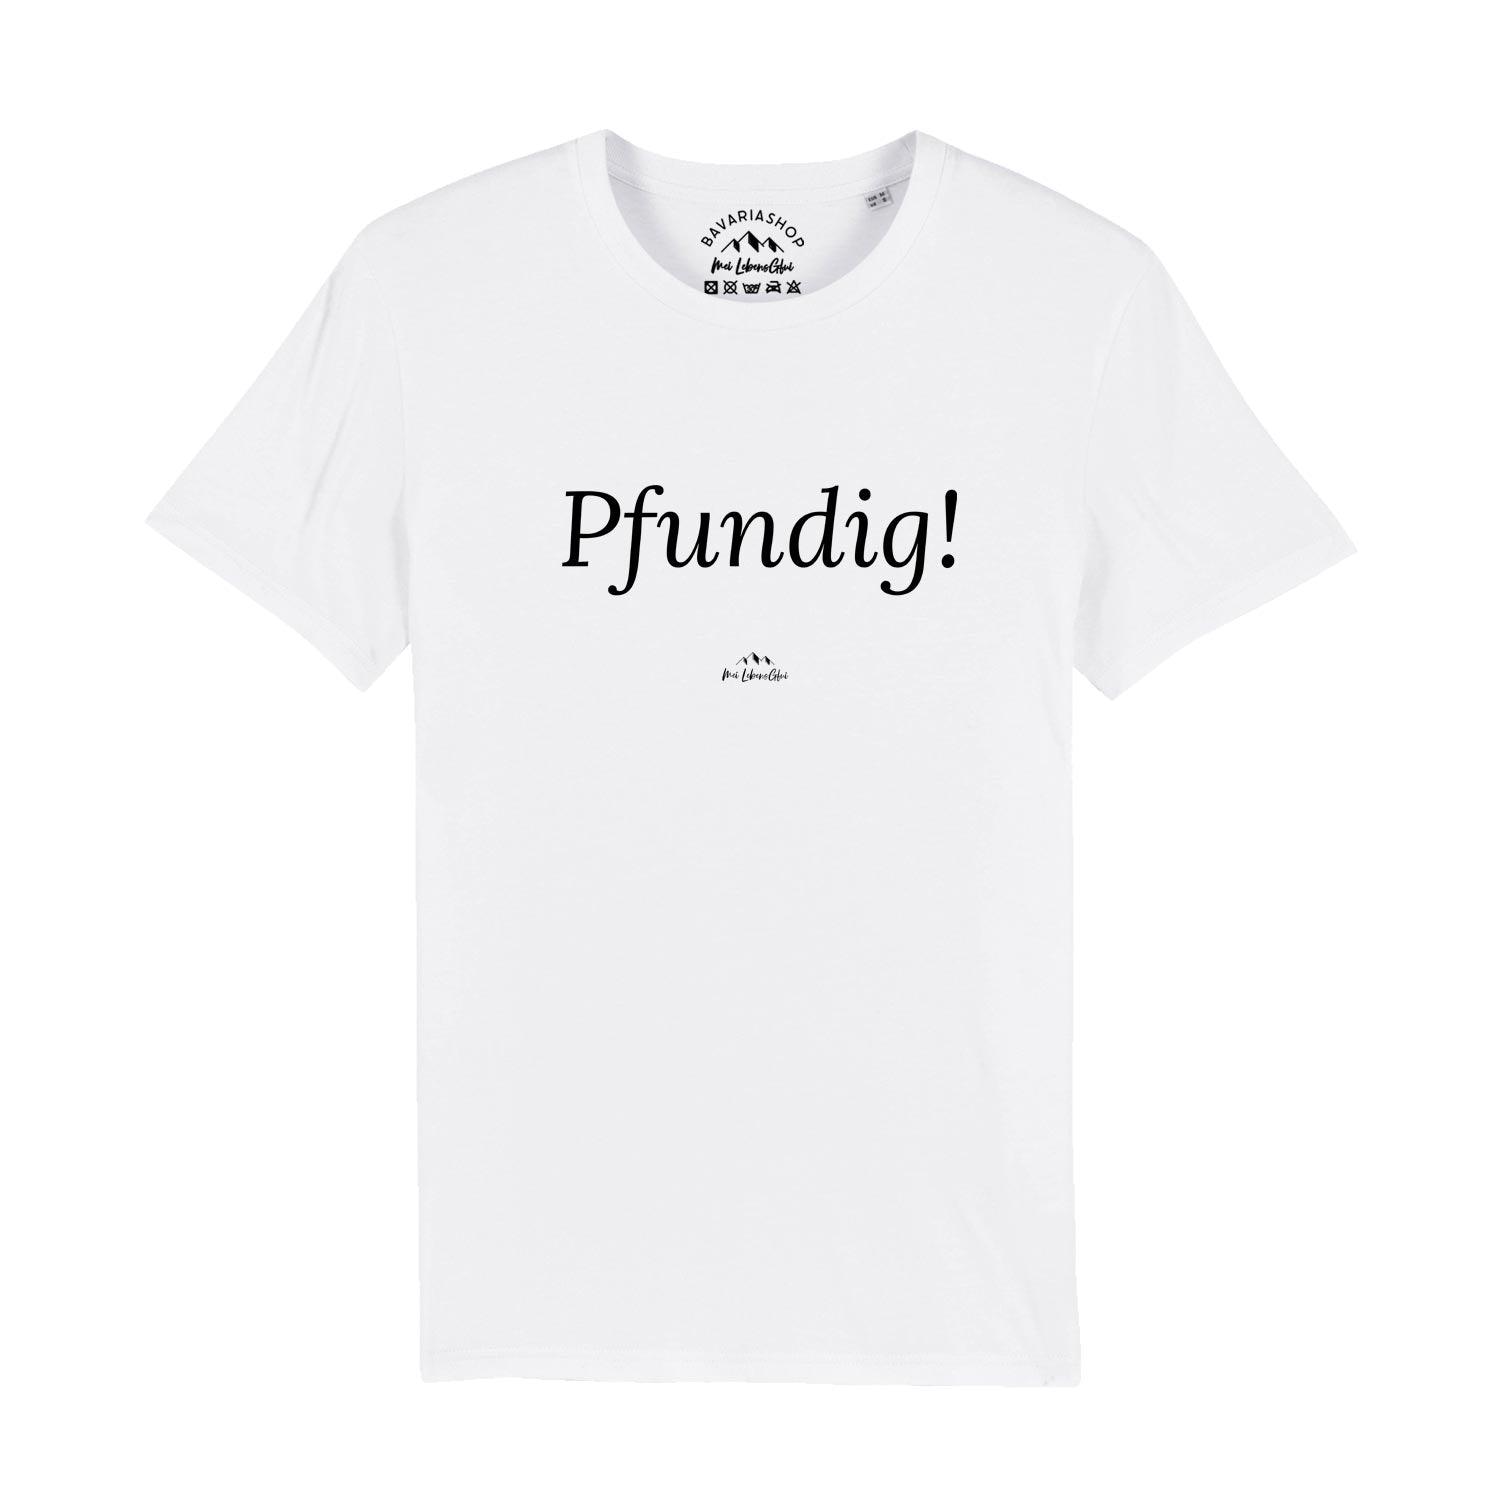 Herren T-Shirt "Pfundig!" - bavariashop - mei LebensGfui